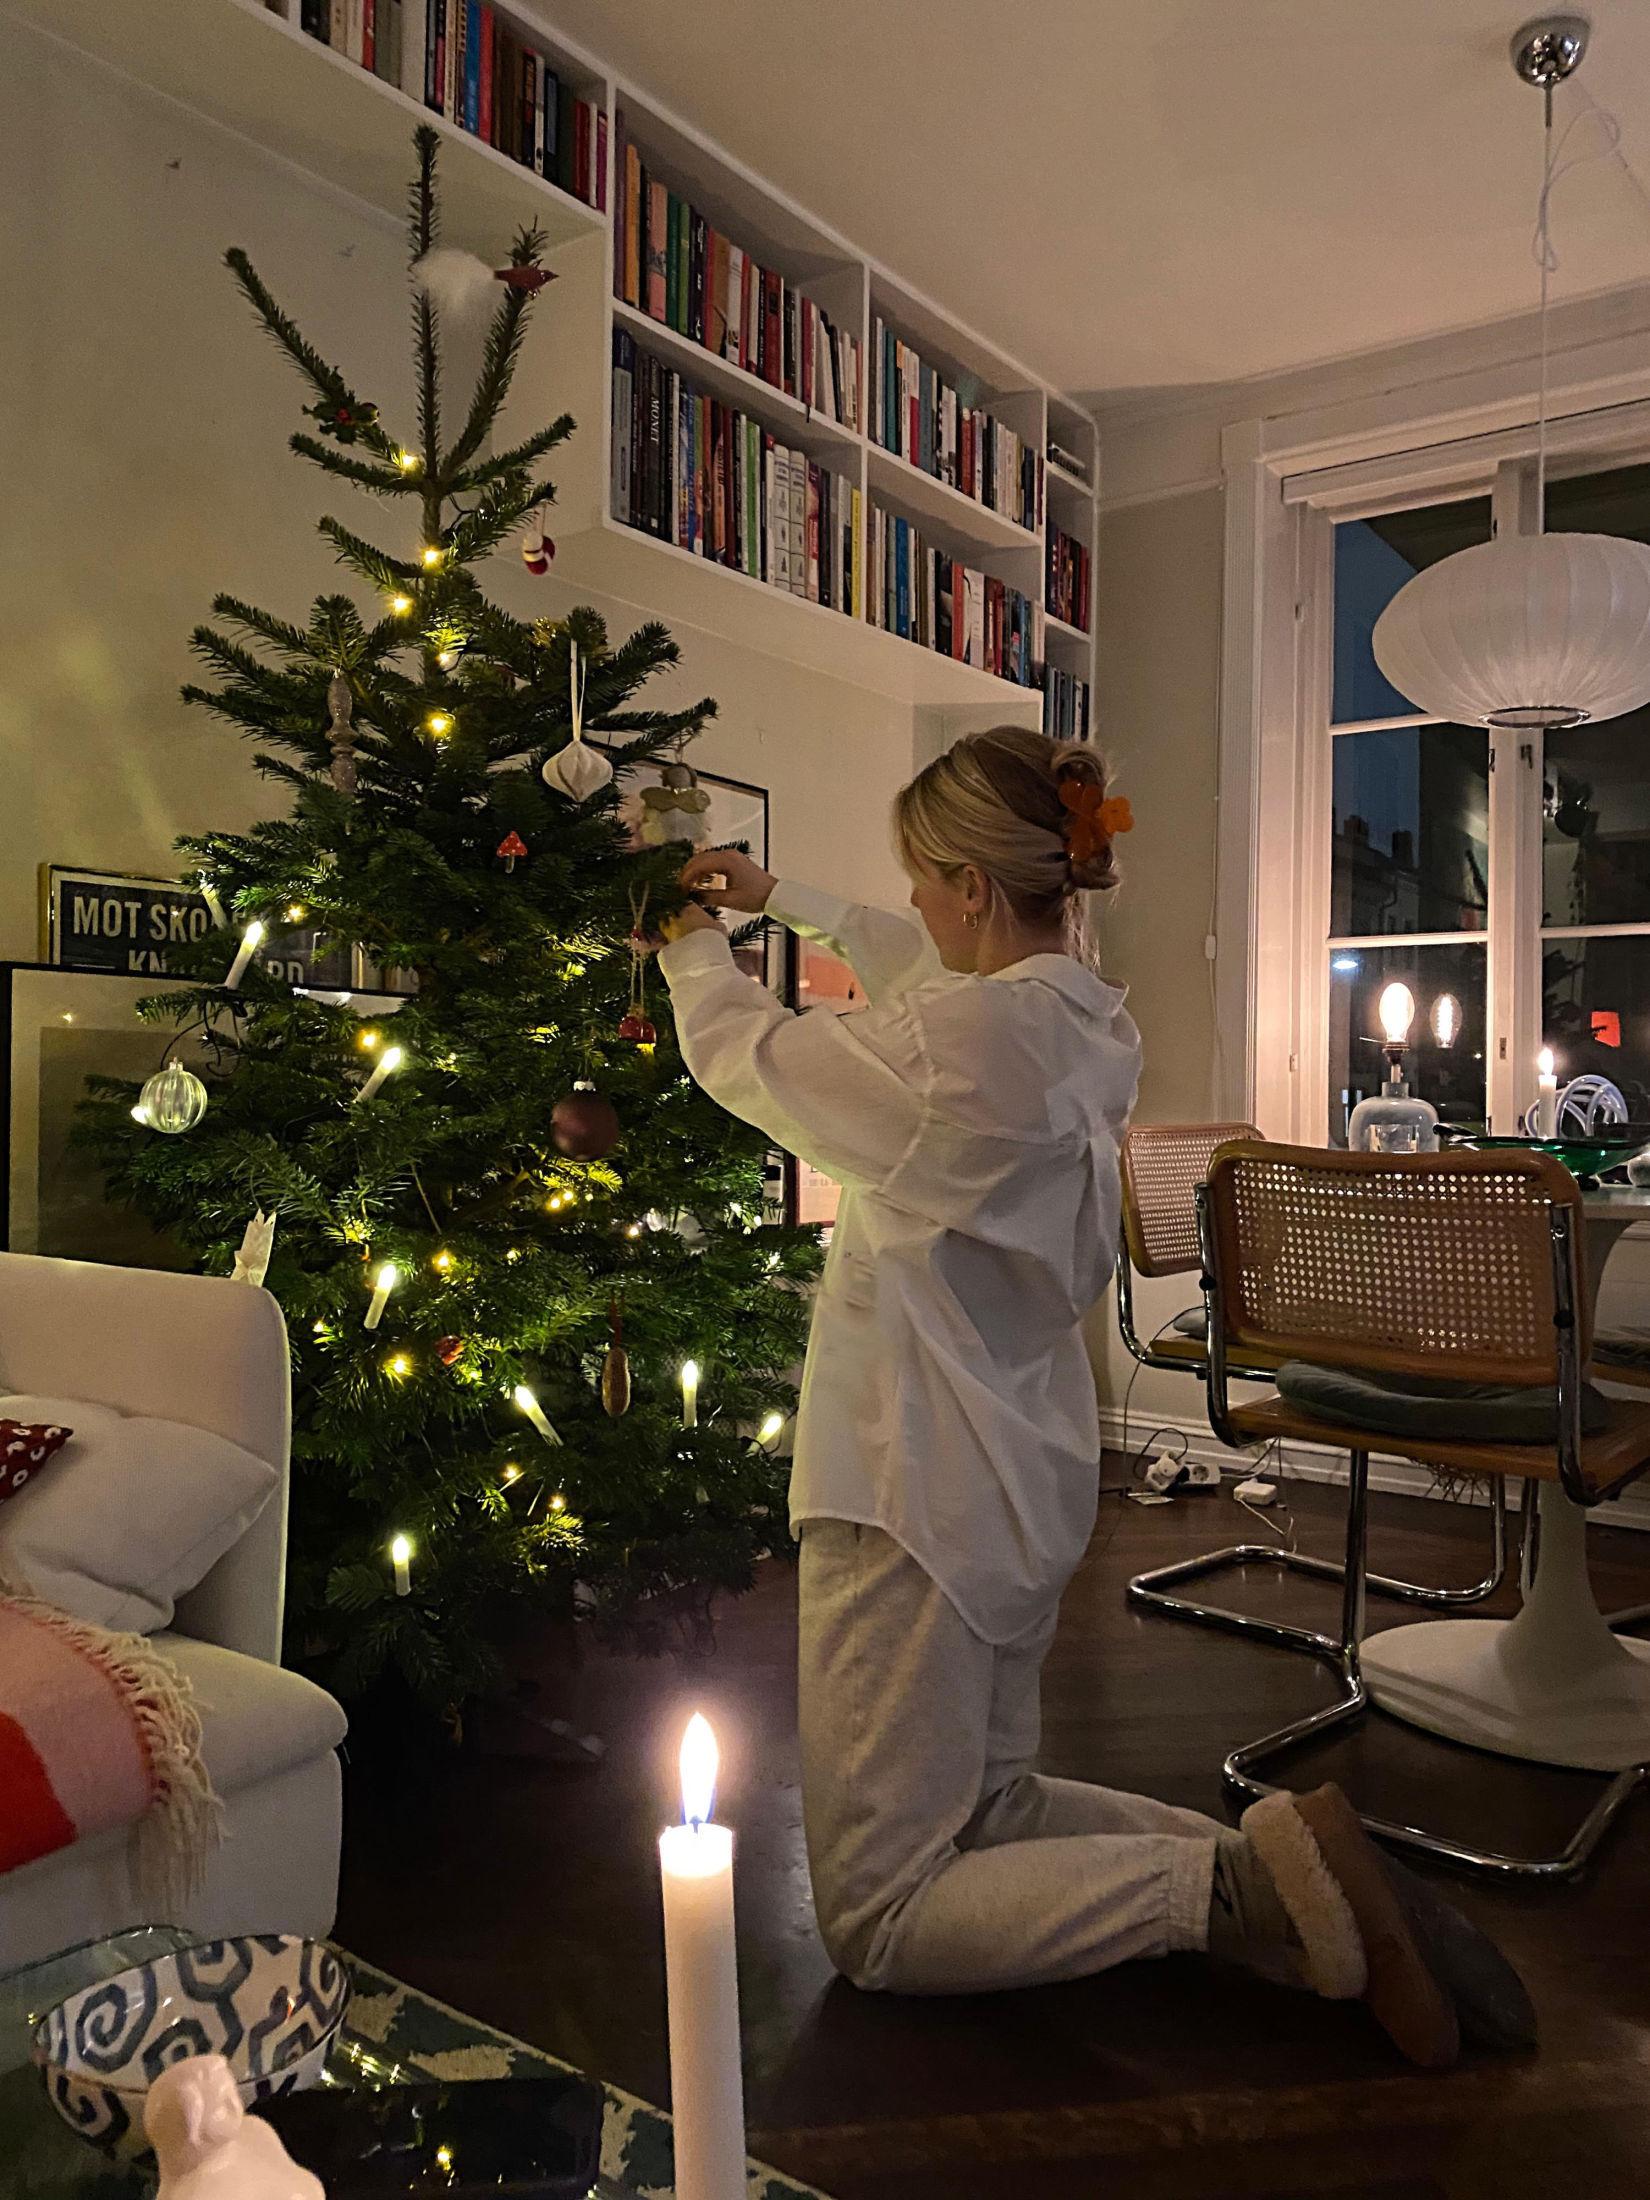 DU GRØNNE GLITRENDE: Julaften feires som alltid i Eleverum hos farmor og farfar, men julestemning hjemme må også til. Foto: Privat